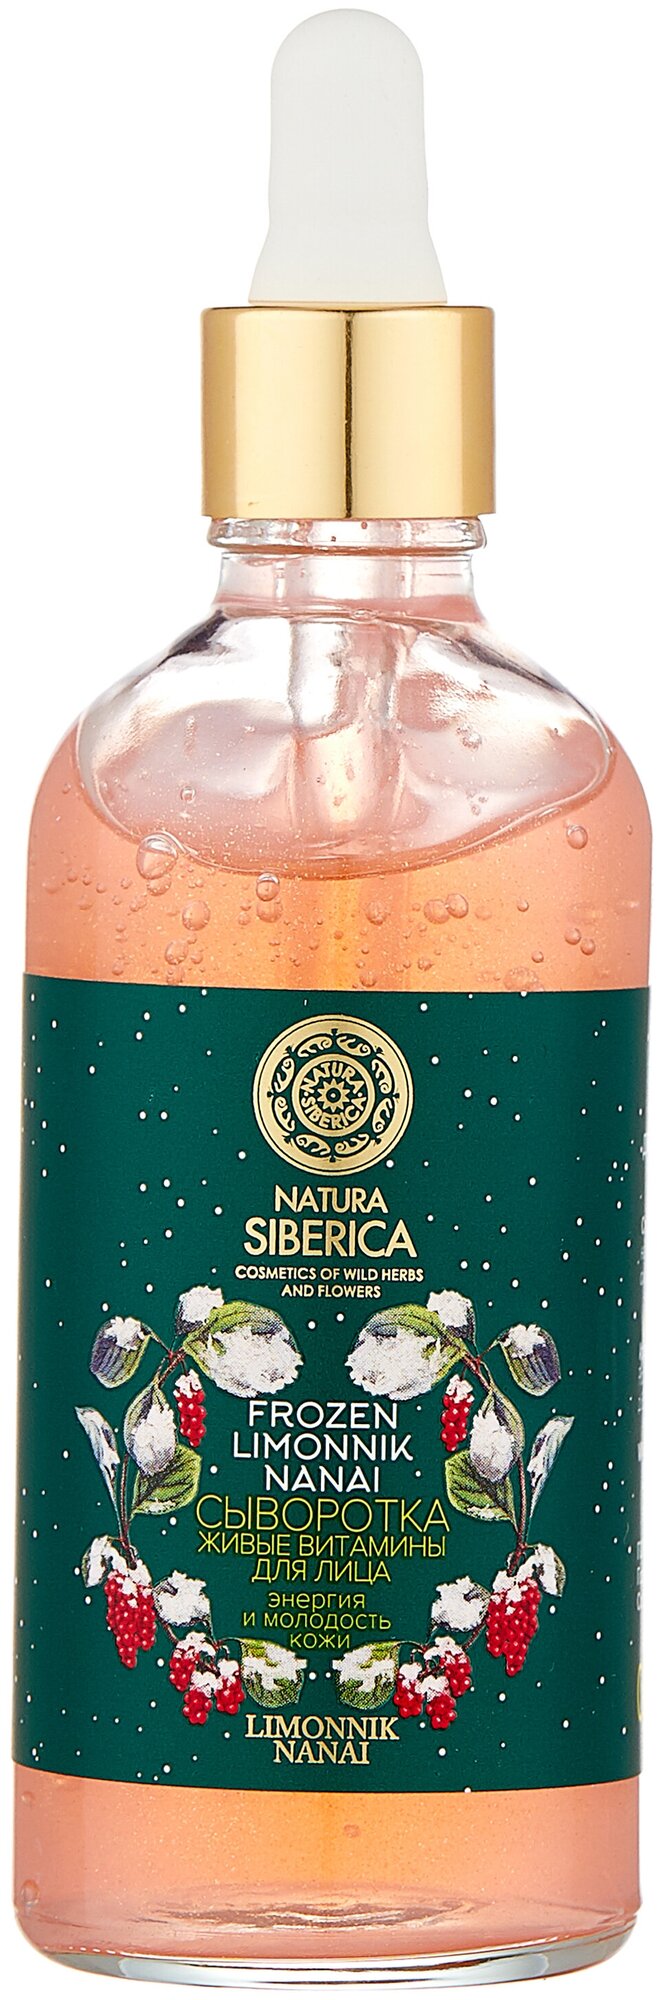 Характеристики модели Natura Siberica Frozen Limonnik Nanai Сыворотка Живые  витамины для лица Энергия и молодость кожи — Кремы и сыворотки — Яндекс  Маркет